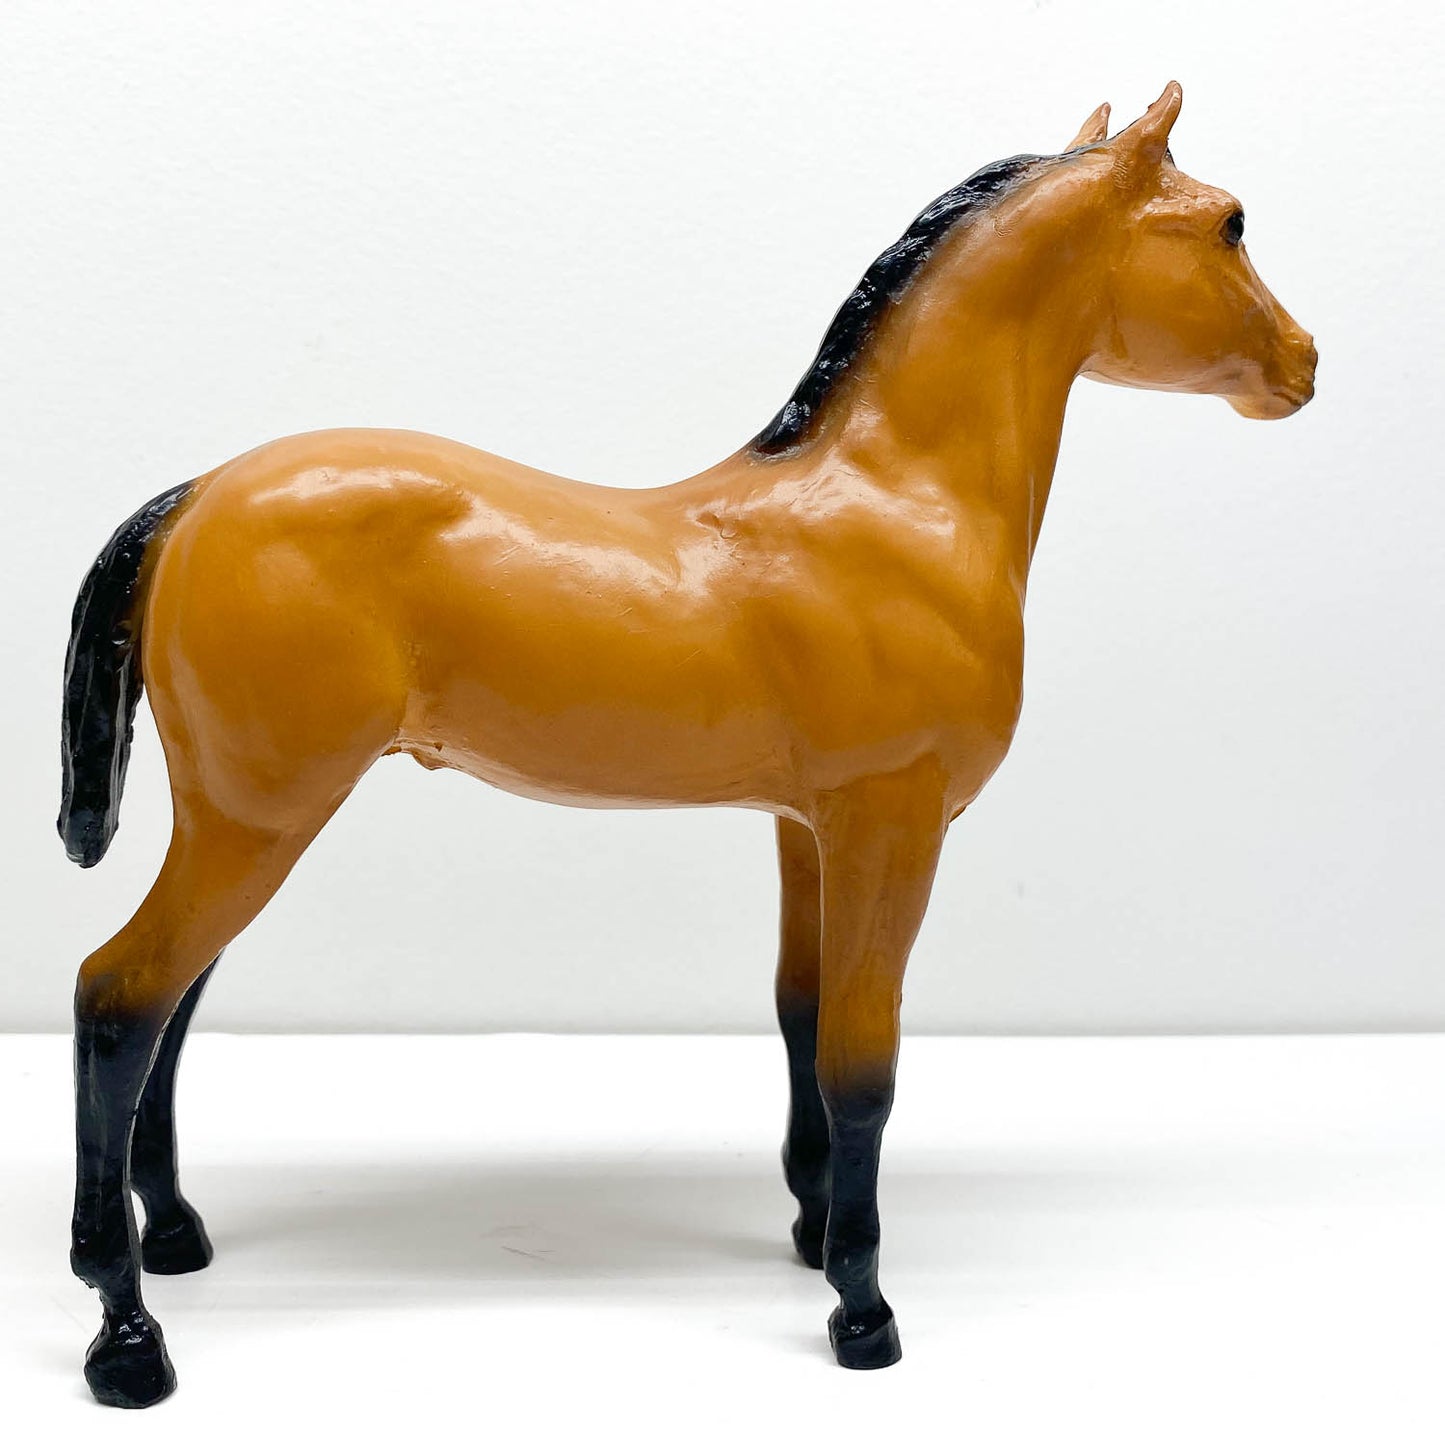 Standing Stock Horse Foal, Buckskin